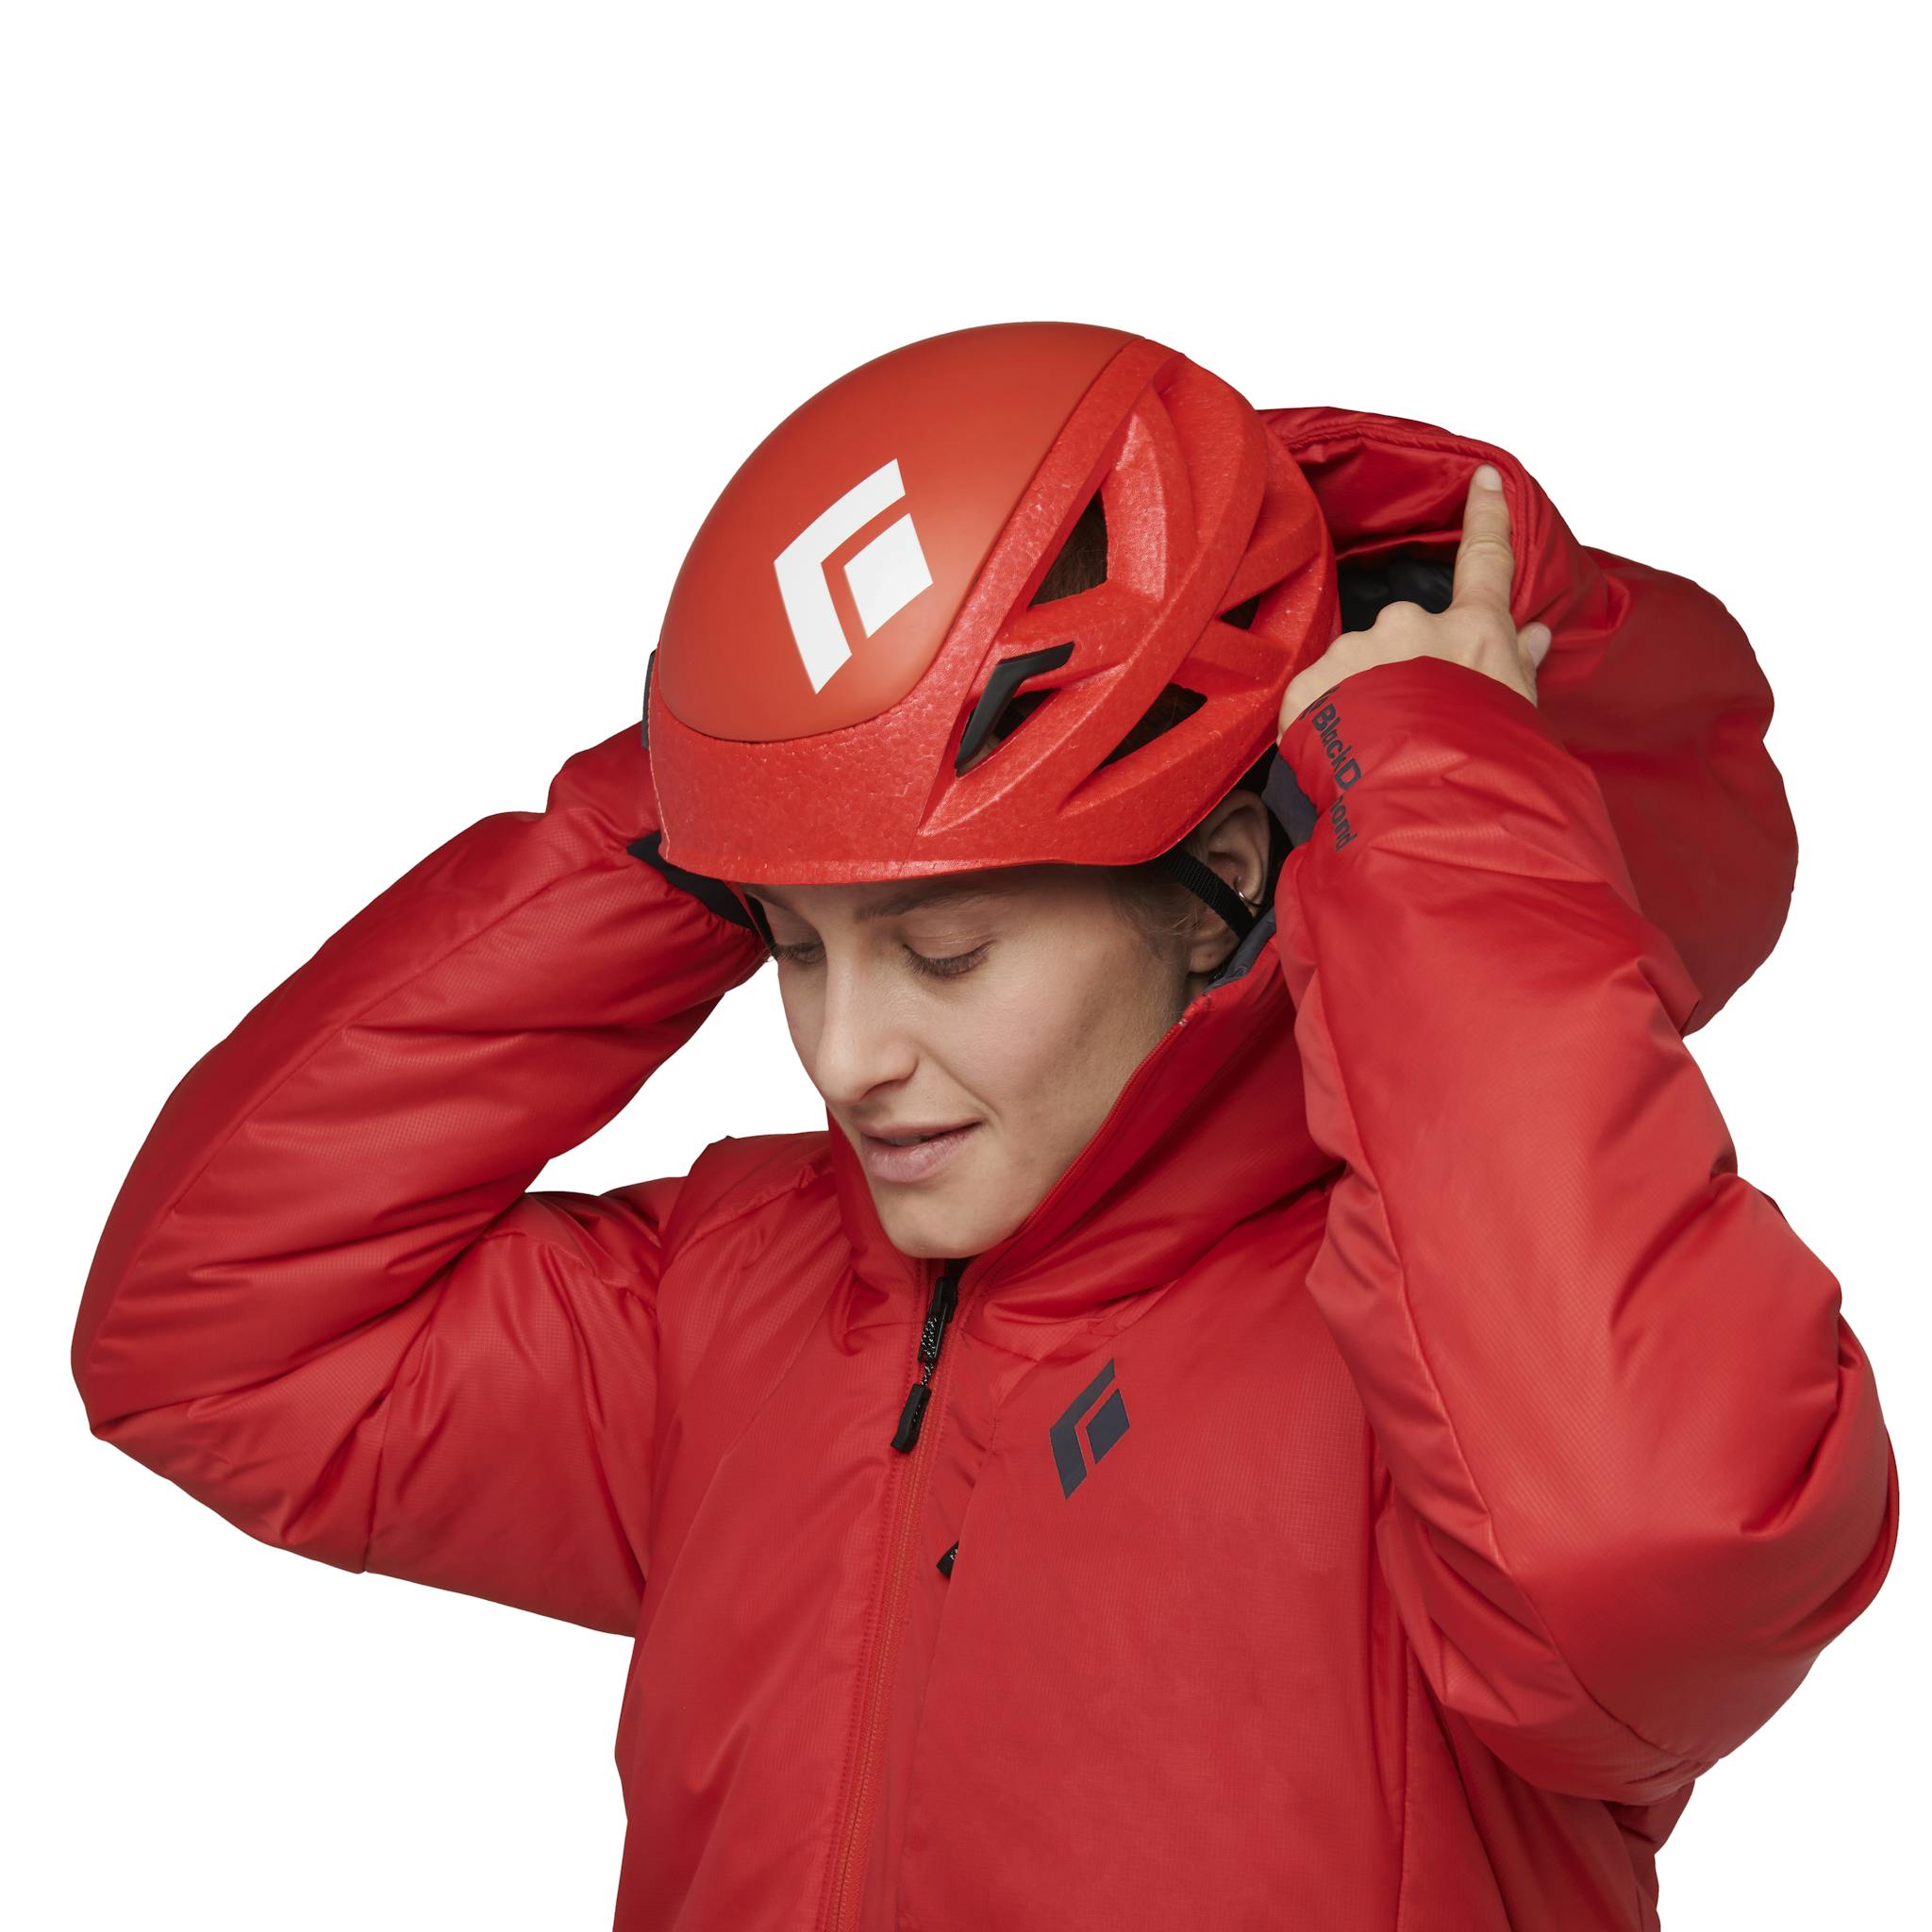 Adjustable climbing helmet-compatible hood